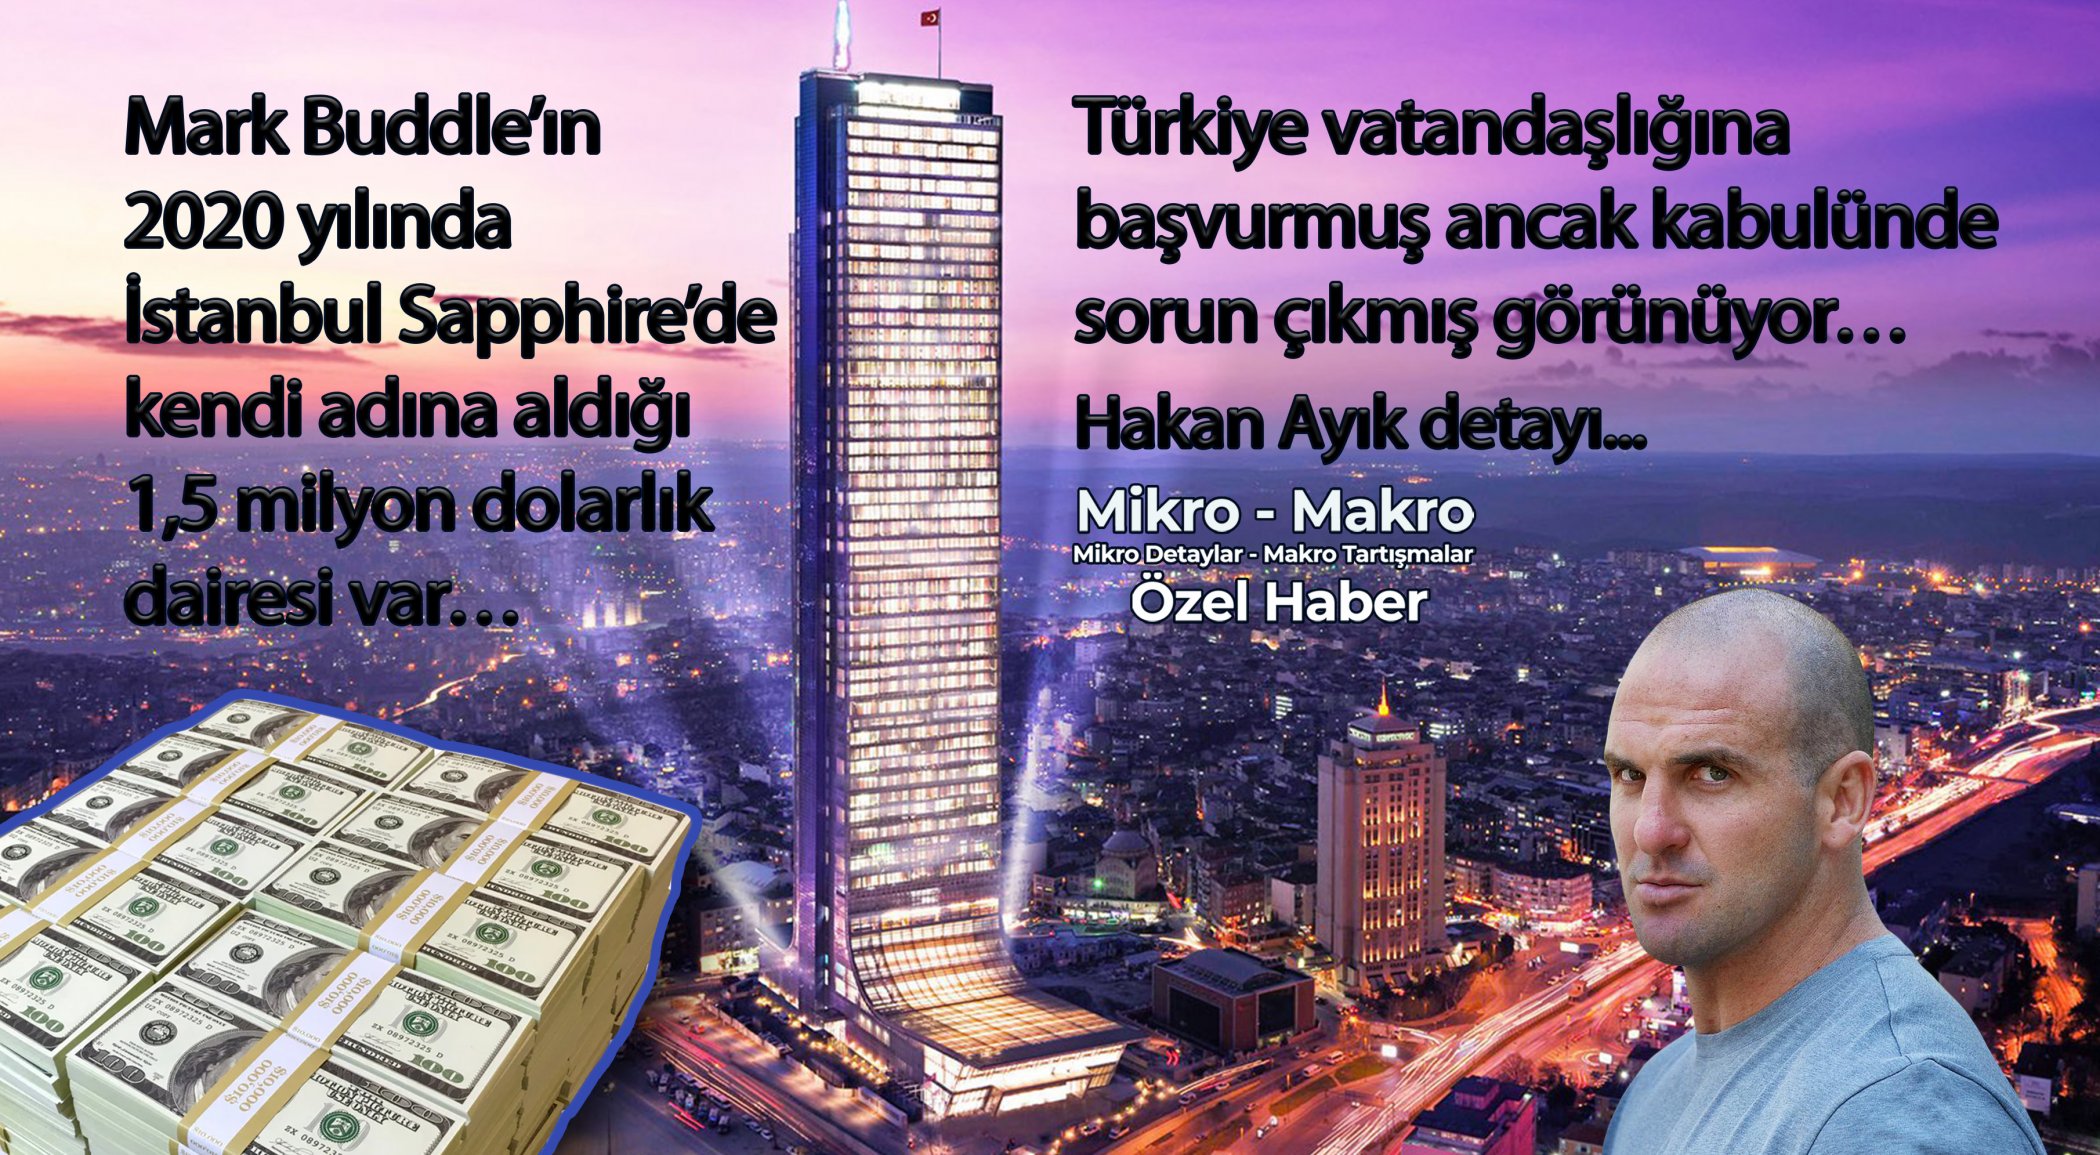 https://mail.mikro-makro.net/mark-buddlein-2020-yilinda-istanbulda-kendi-ismine-tapusunu-aldigi-dairesi-var